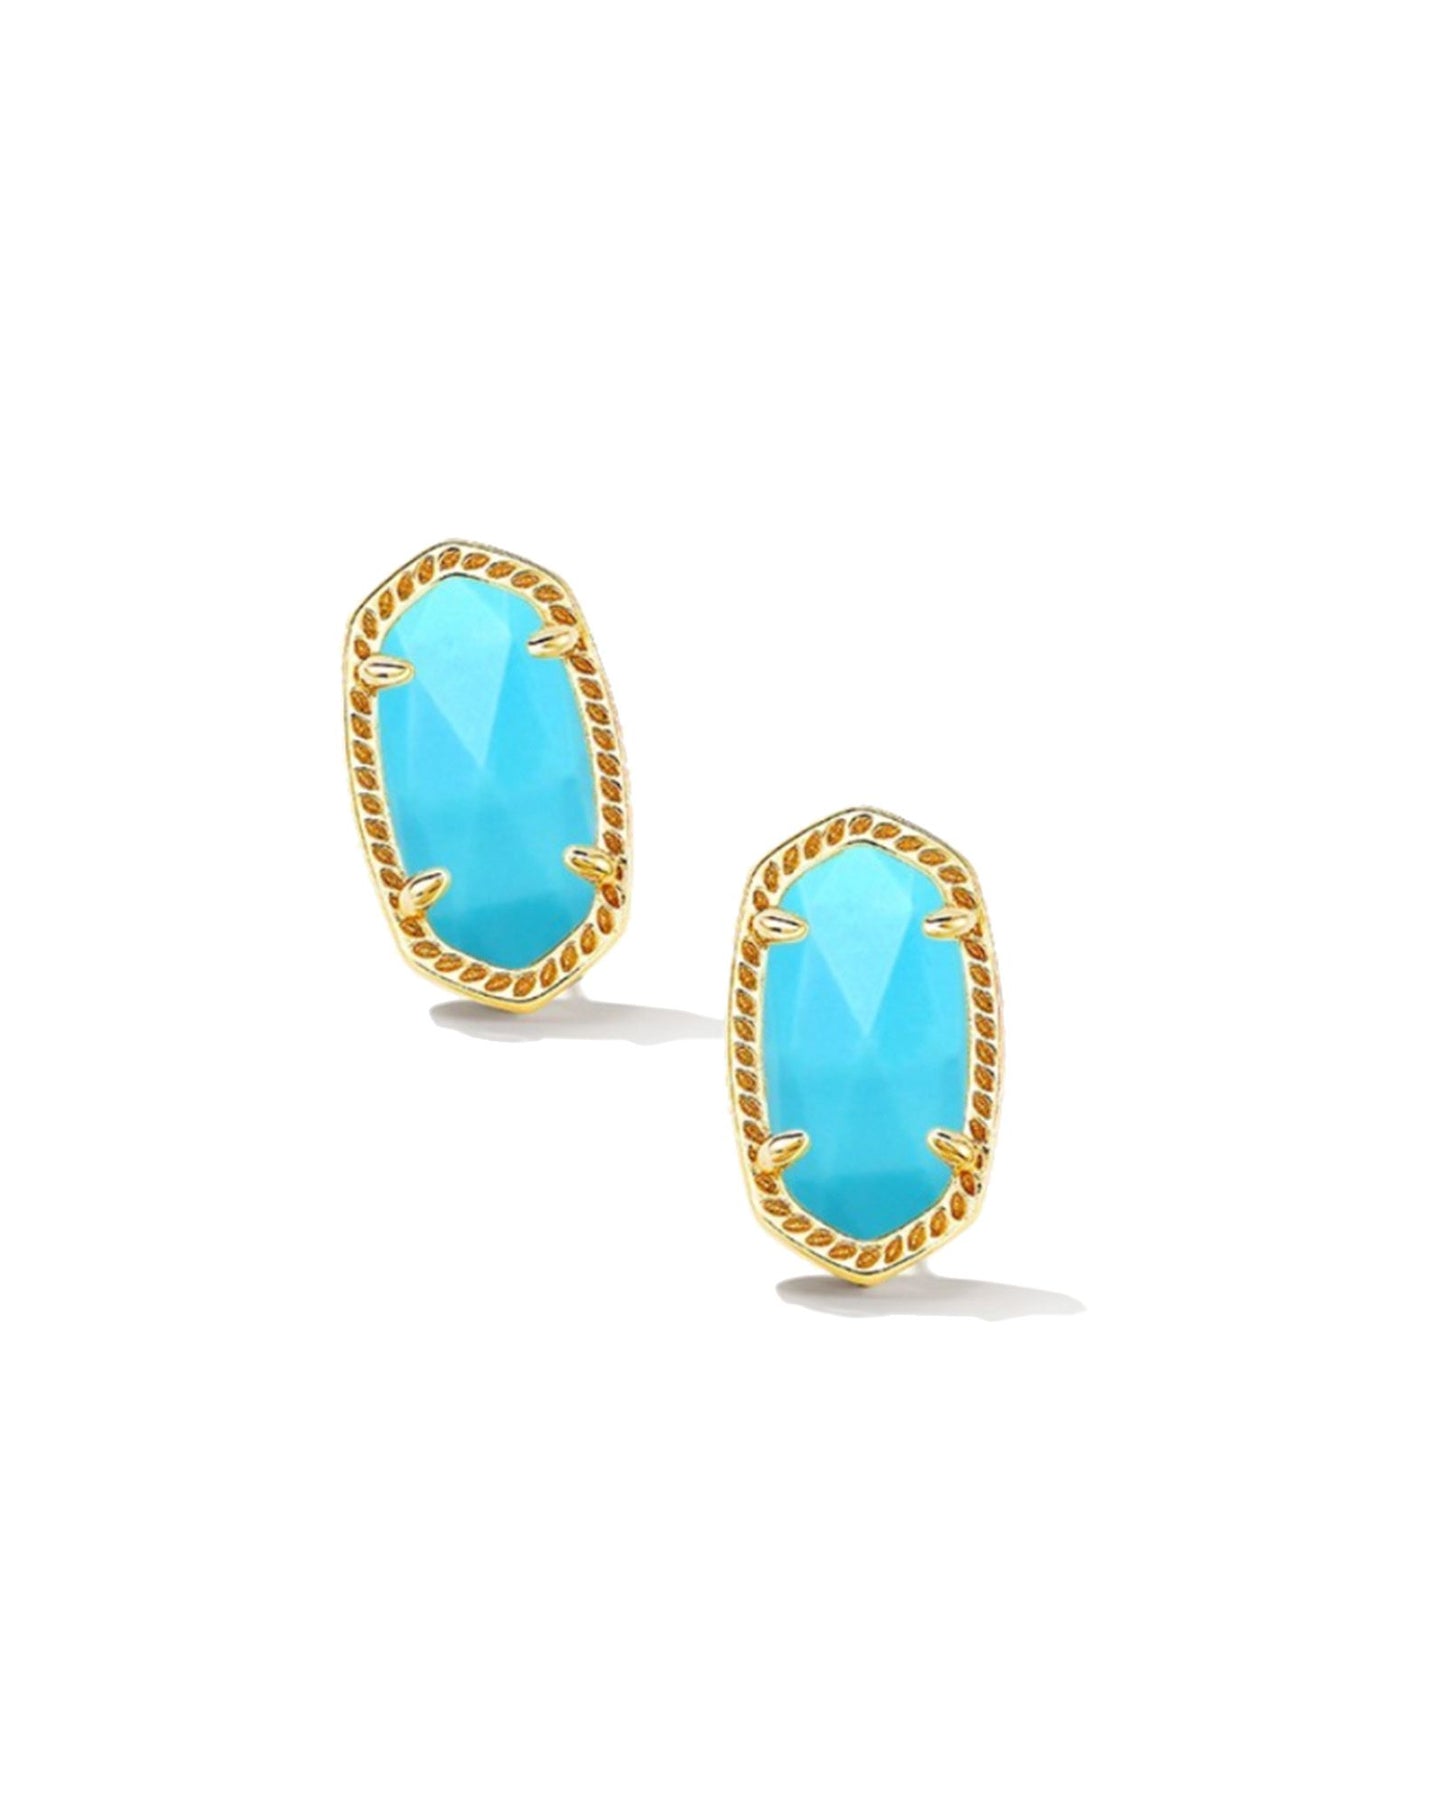 Kendra Scott Ellie Stud Earrings Gold Turquoise Magnesite-Earrings-Kendra Scott-Created - 01/15/24, E6031GLD-The Twisted Chandelier